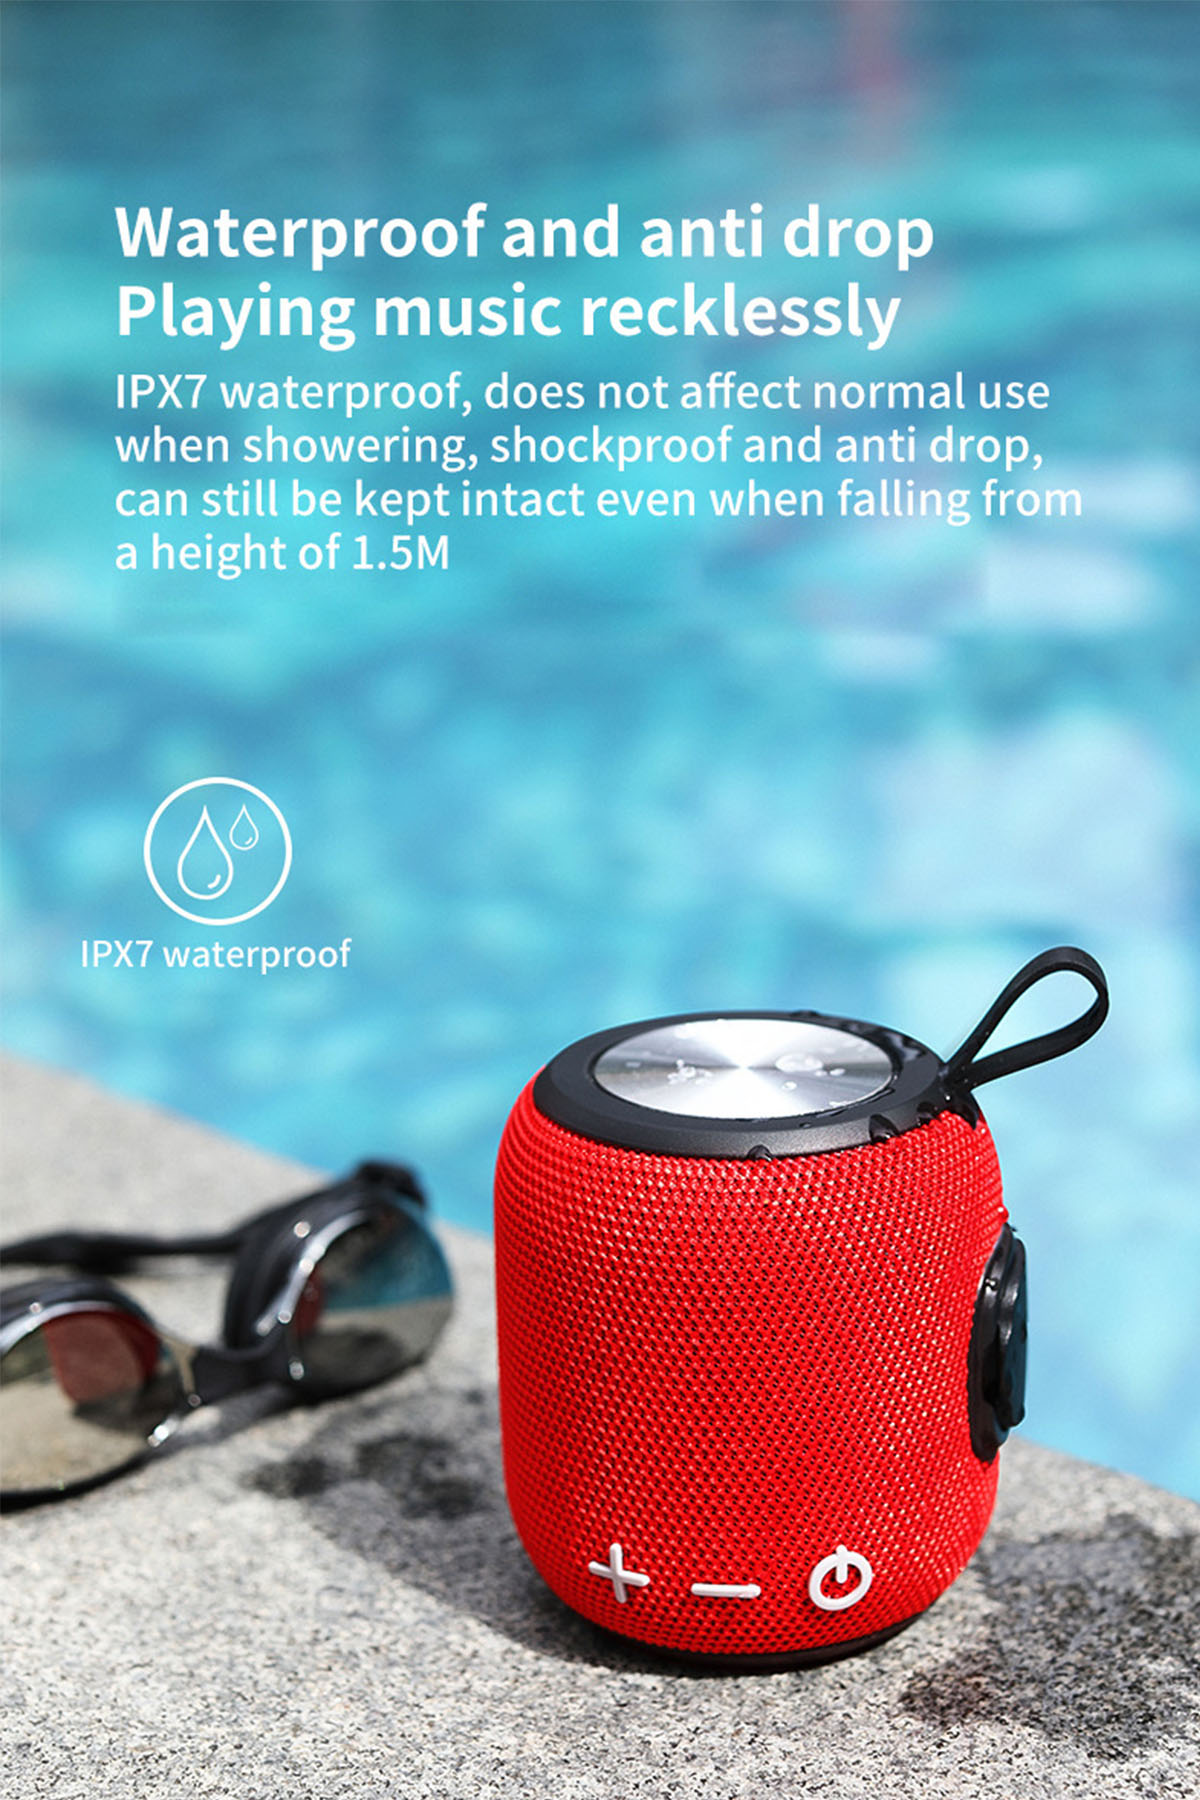 BRIGHTAKE HIFI Bluetooth-Lautsprecher, Blau-grün Langzeitbatterie Outdoor-Tauglich, SoundWave: Sound,